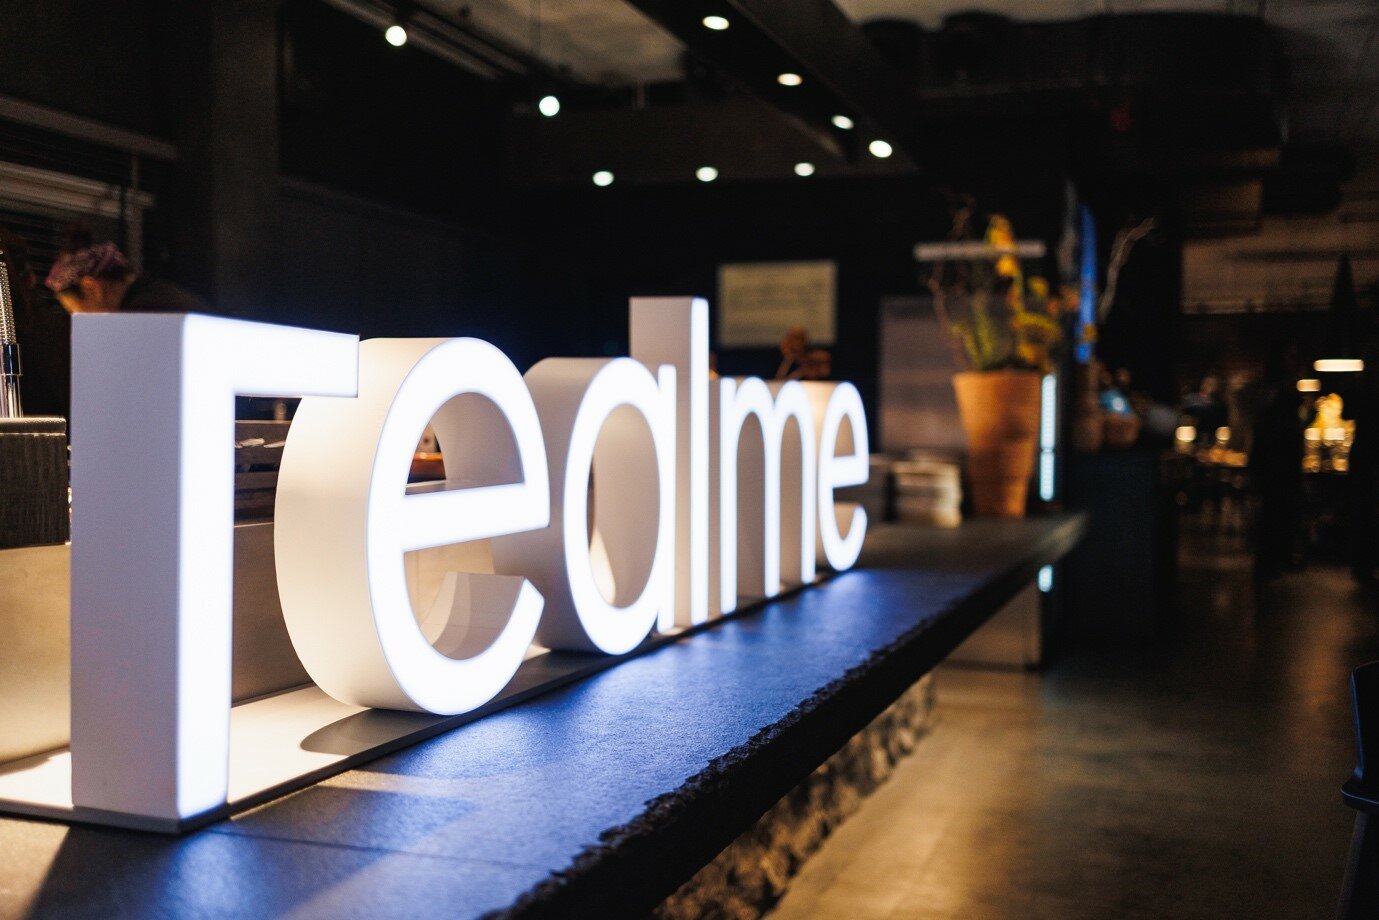 Realme кардинально меняется: у компании новый логотип, слоган и позиционирование